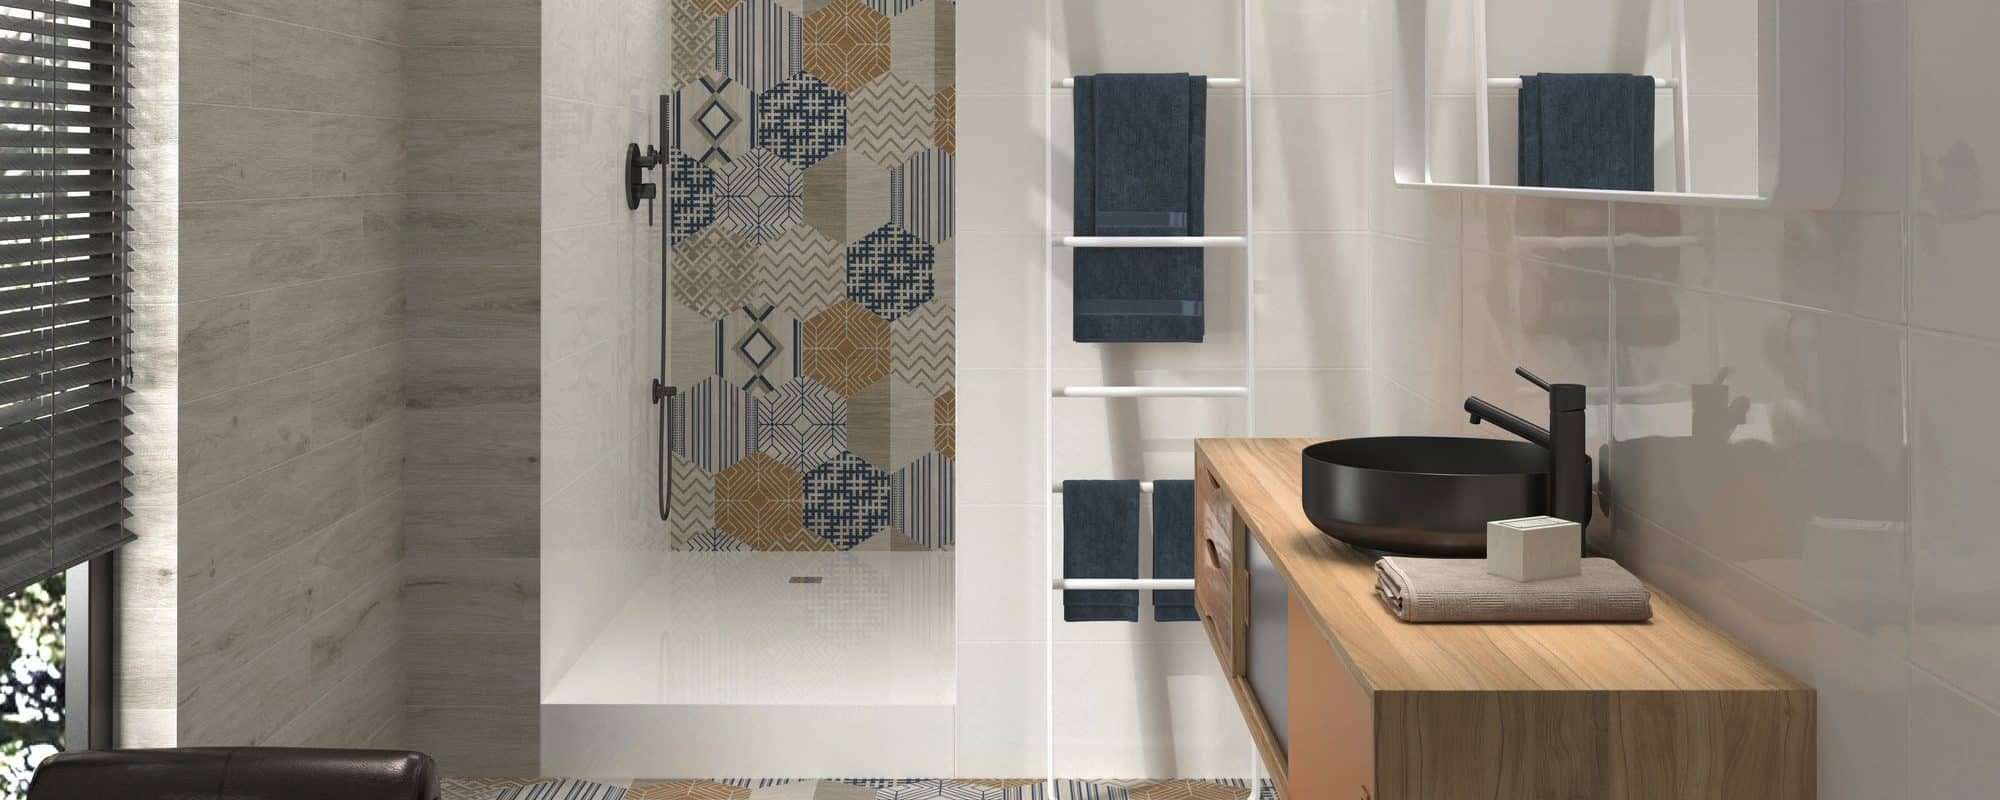 ALABAMA wood effect porcelain bathroom tiles uk slider 7